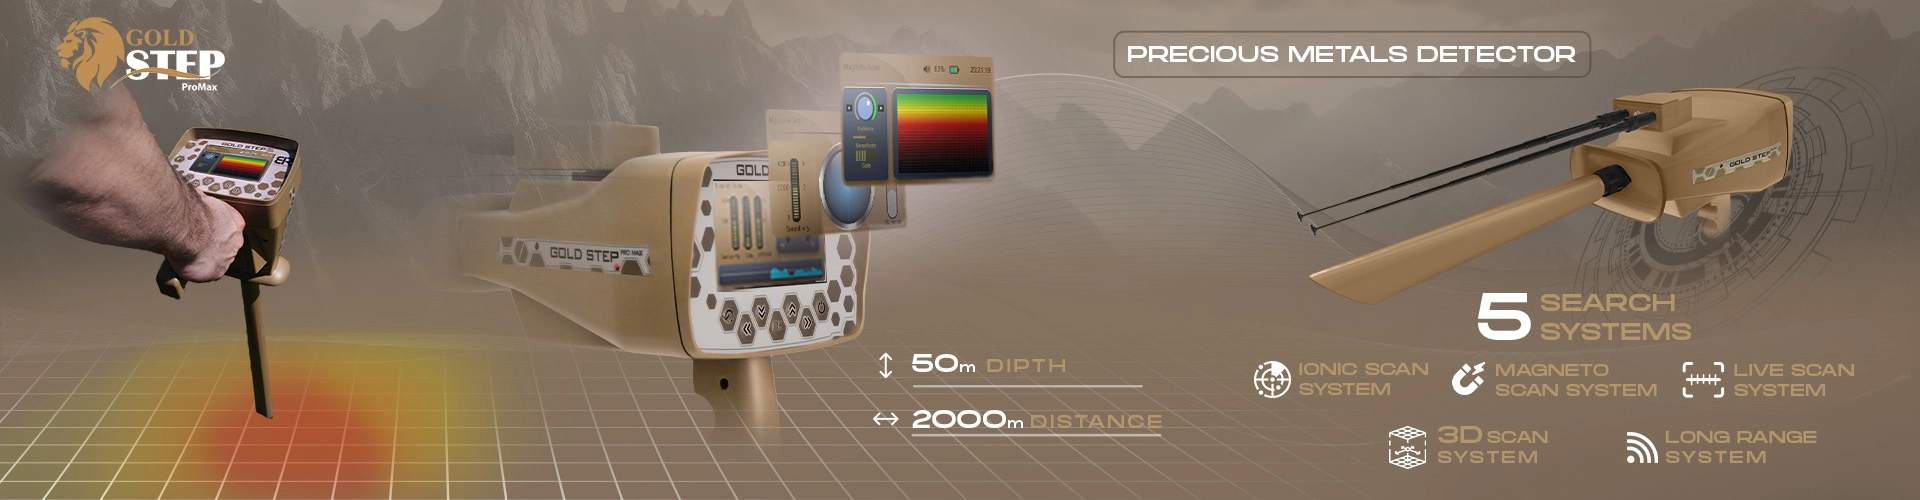 BR Gold Step Pro Max - Detector de metales y oro